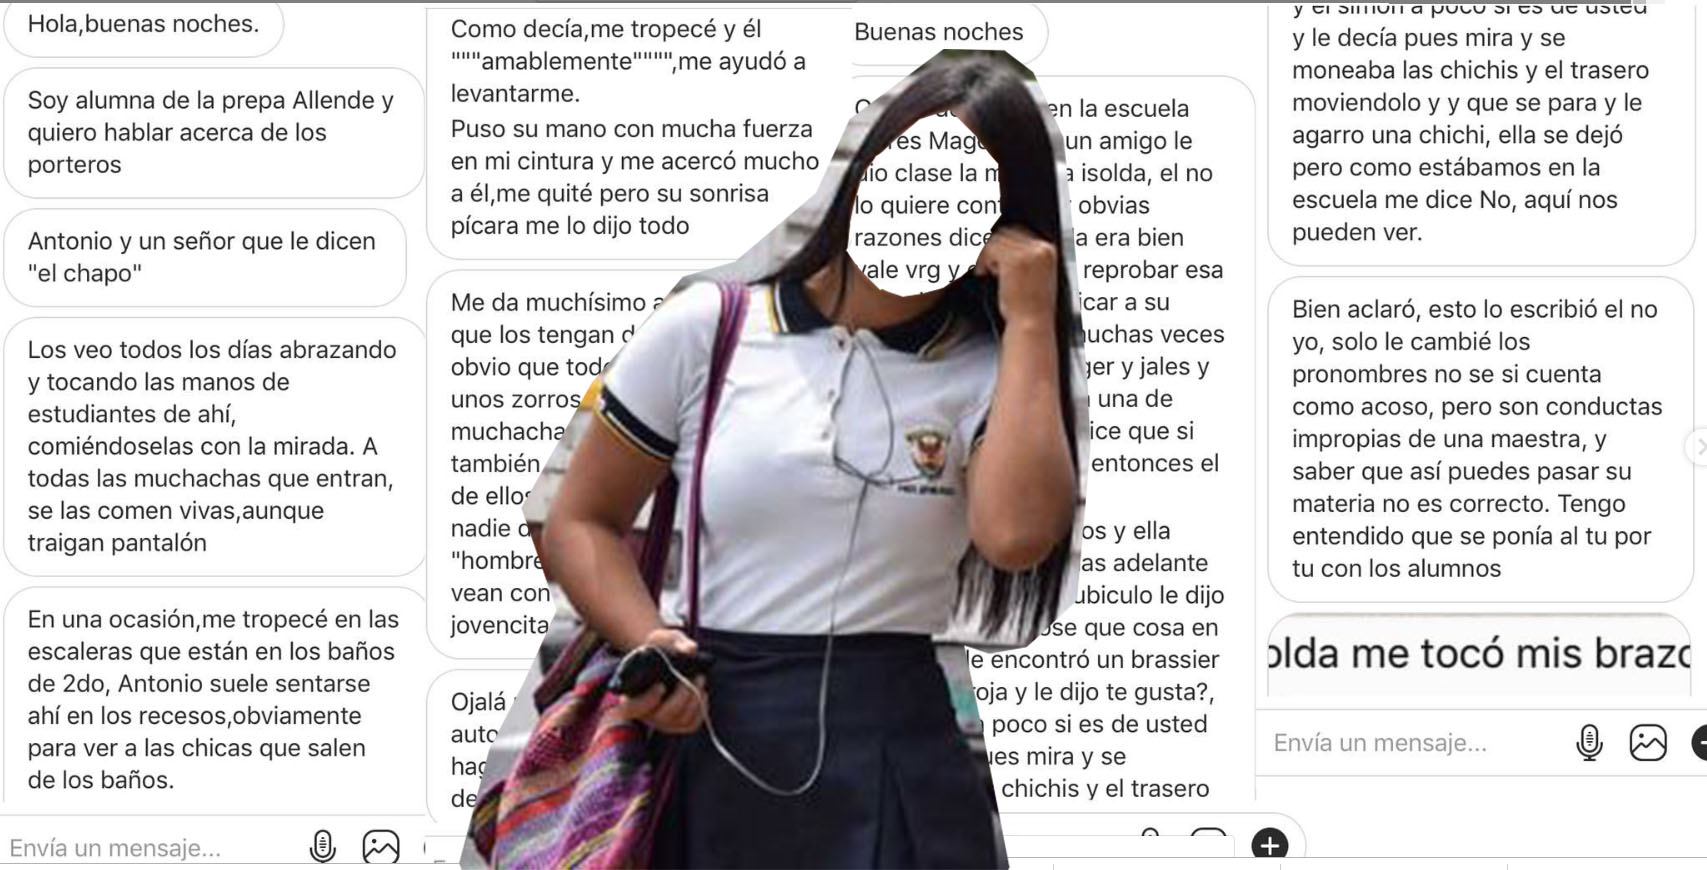 Rompen el silencio | Alumnas denuncian años de acoso y abusos en la UAS (Sinaloa)